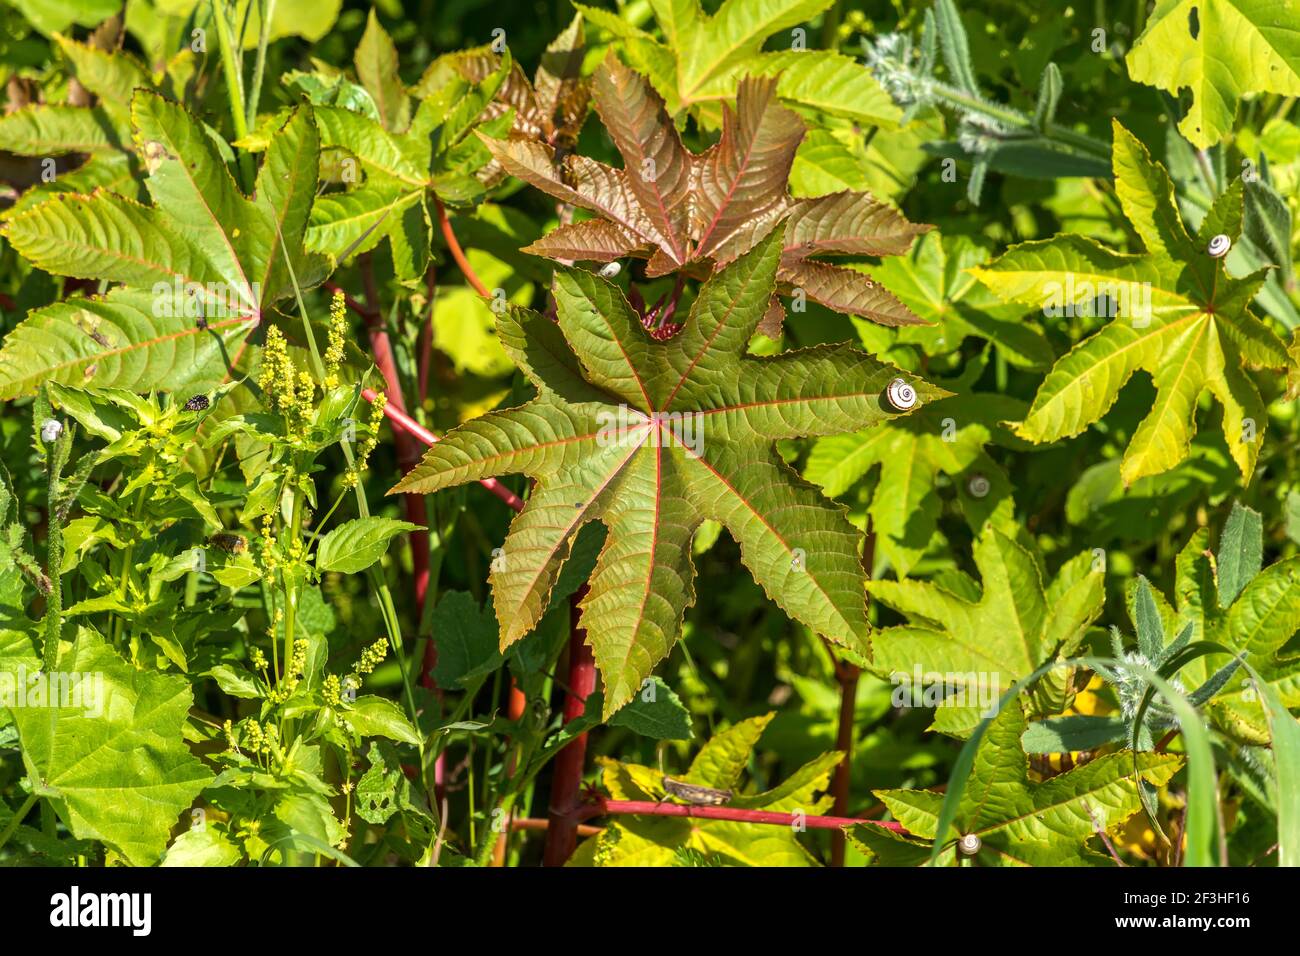 La feuille de Ricinus communis, le haricot de ricin ou l'huile de ricin gros plan avec un escargot dessus Banque D'Images